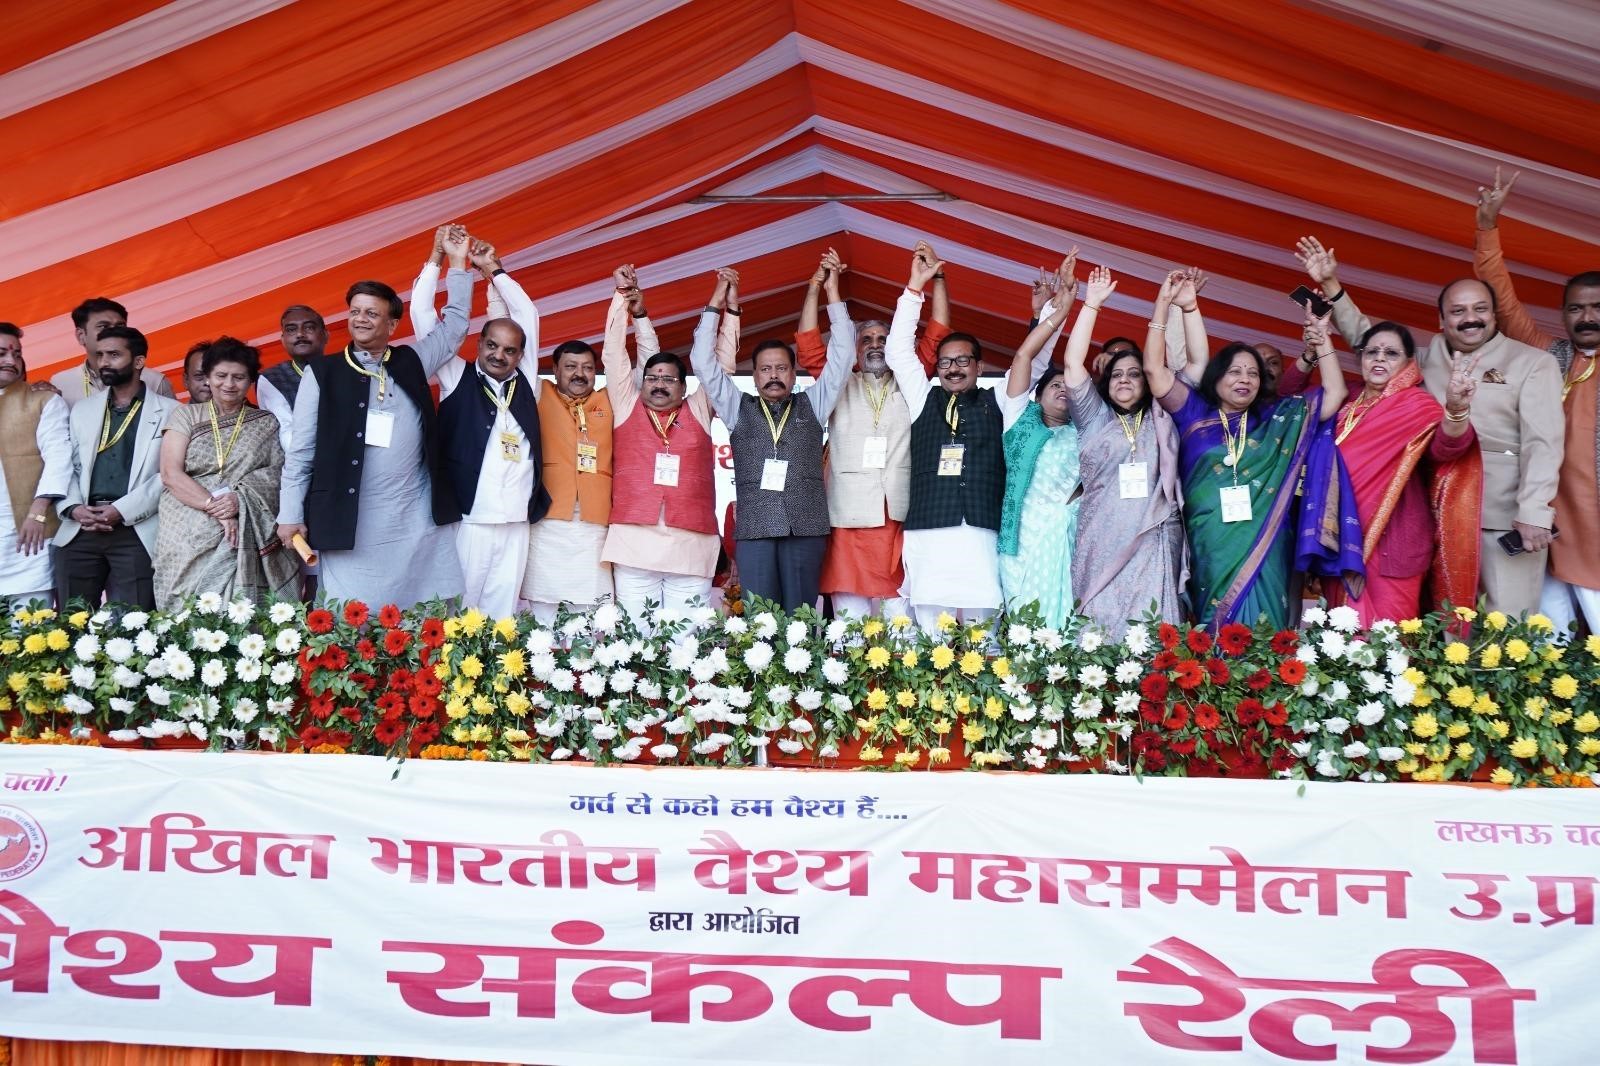 “Natwar Goyal’s Visionary Leadership: Igniting Unity and Progress at the Vaish Sankalp Rally”